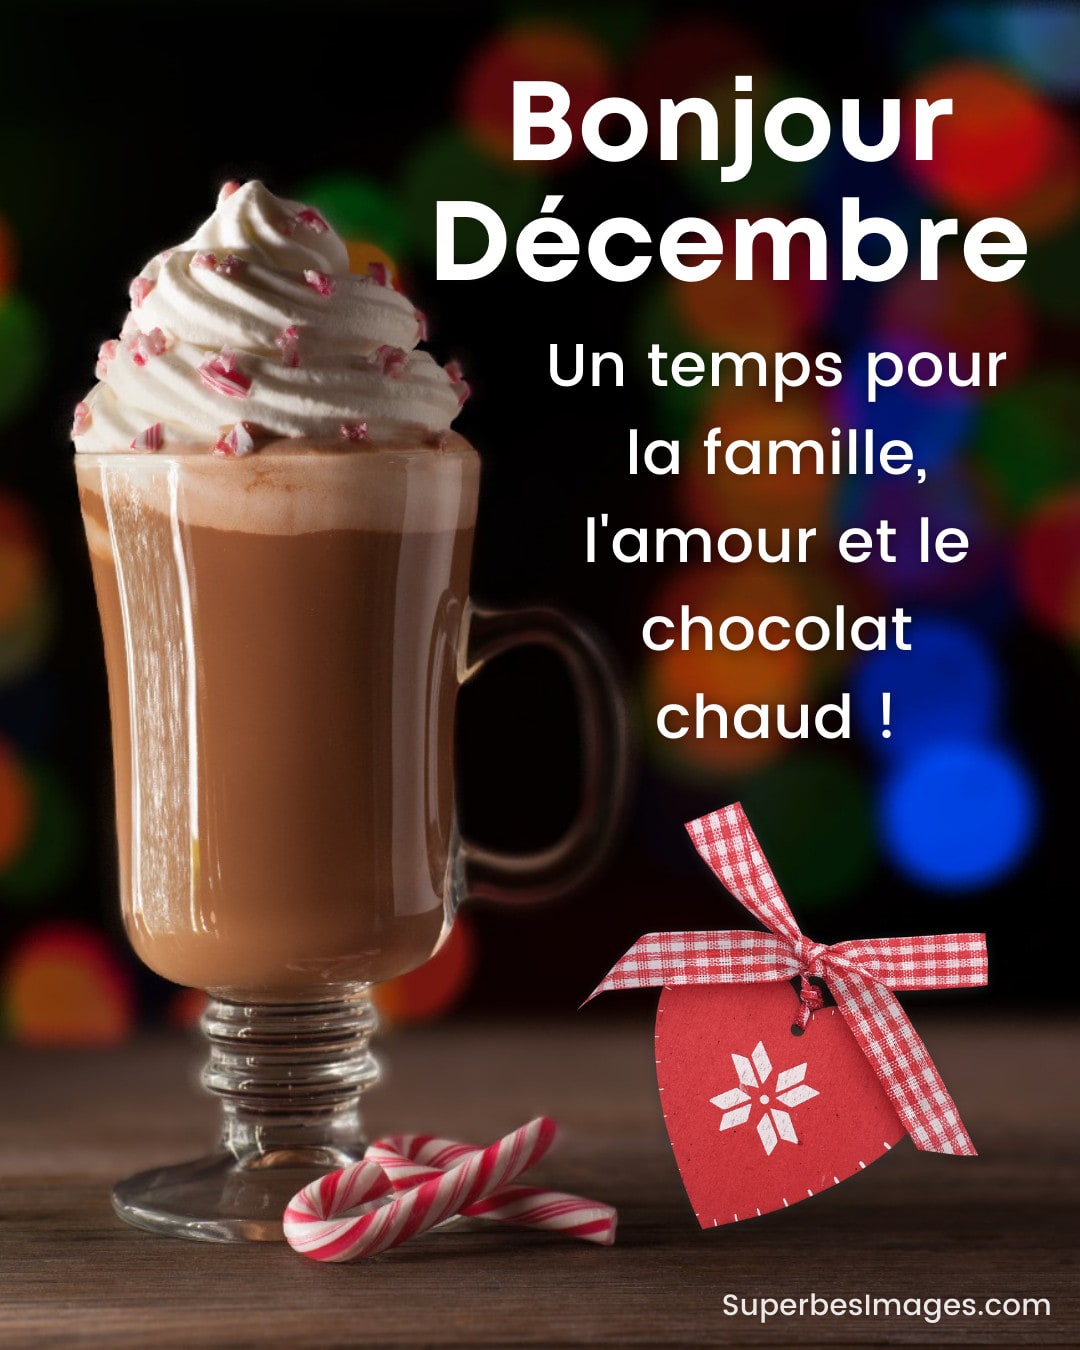 chocolat chaud avec de la crème dans un verre, avec texte bonjour décembre